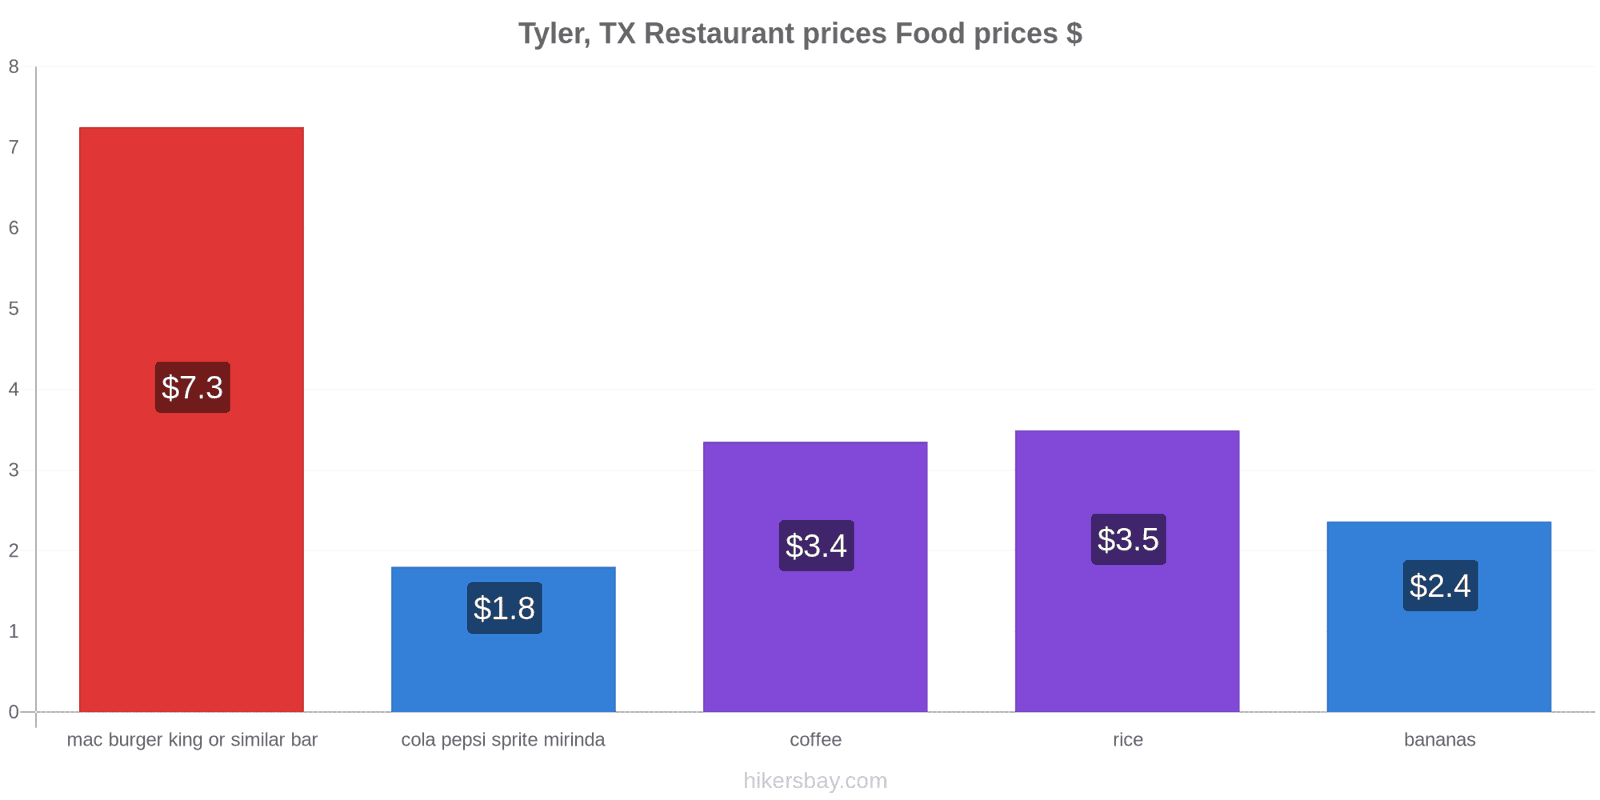 Tyler, TX price changes hikersbay.com